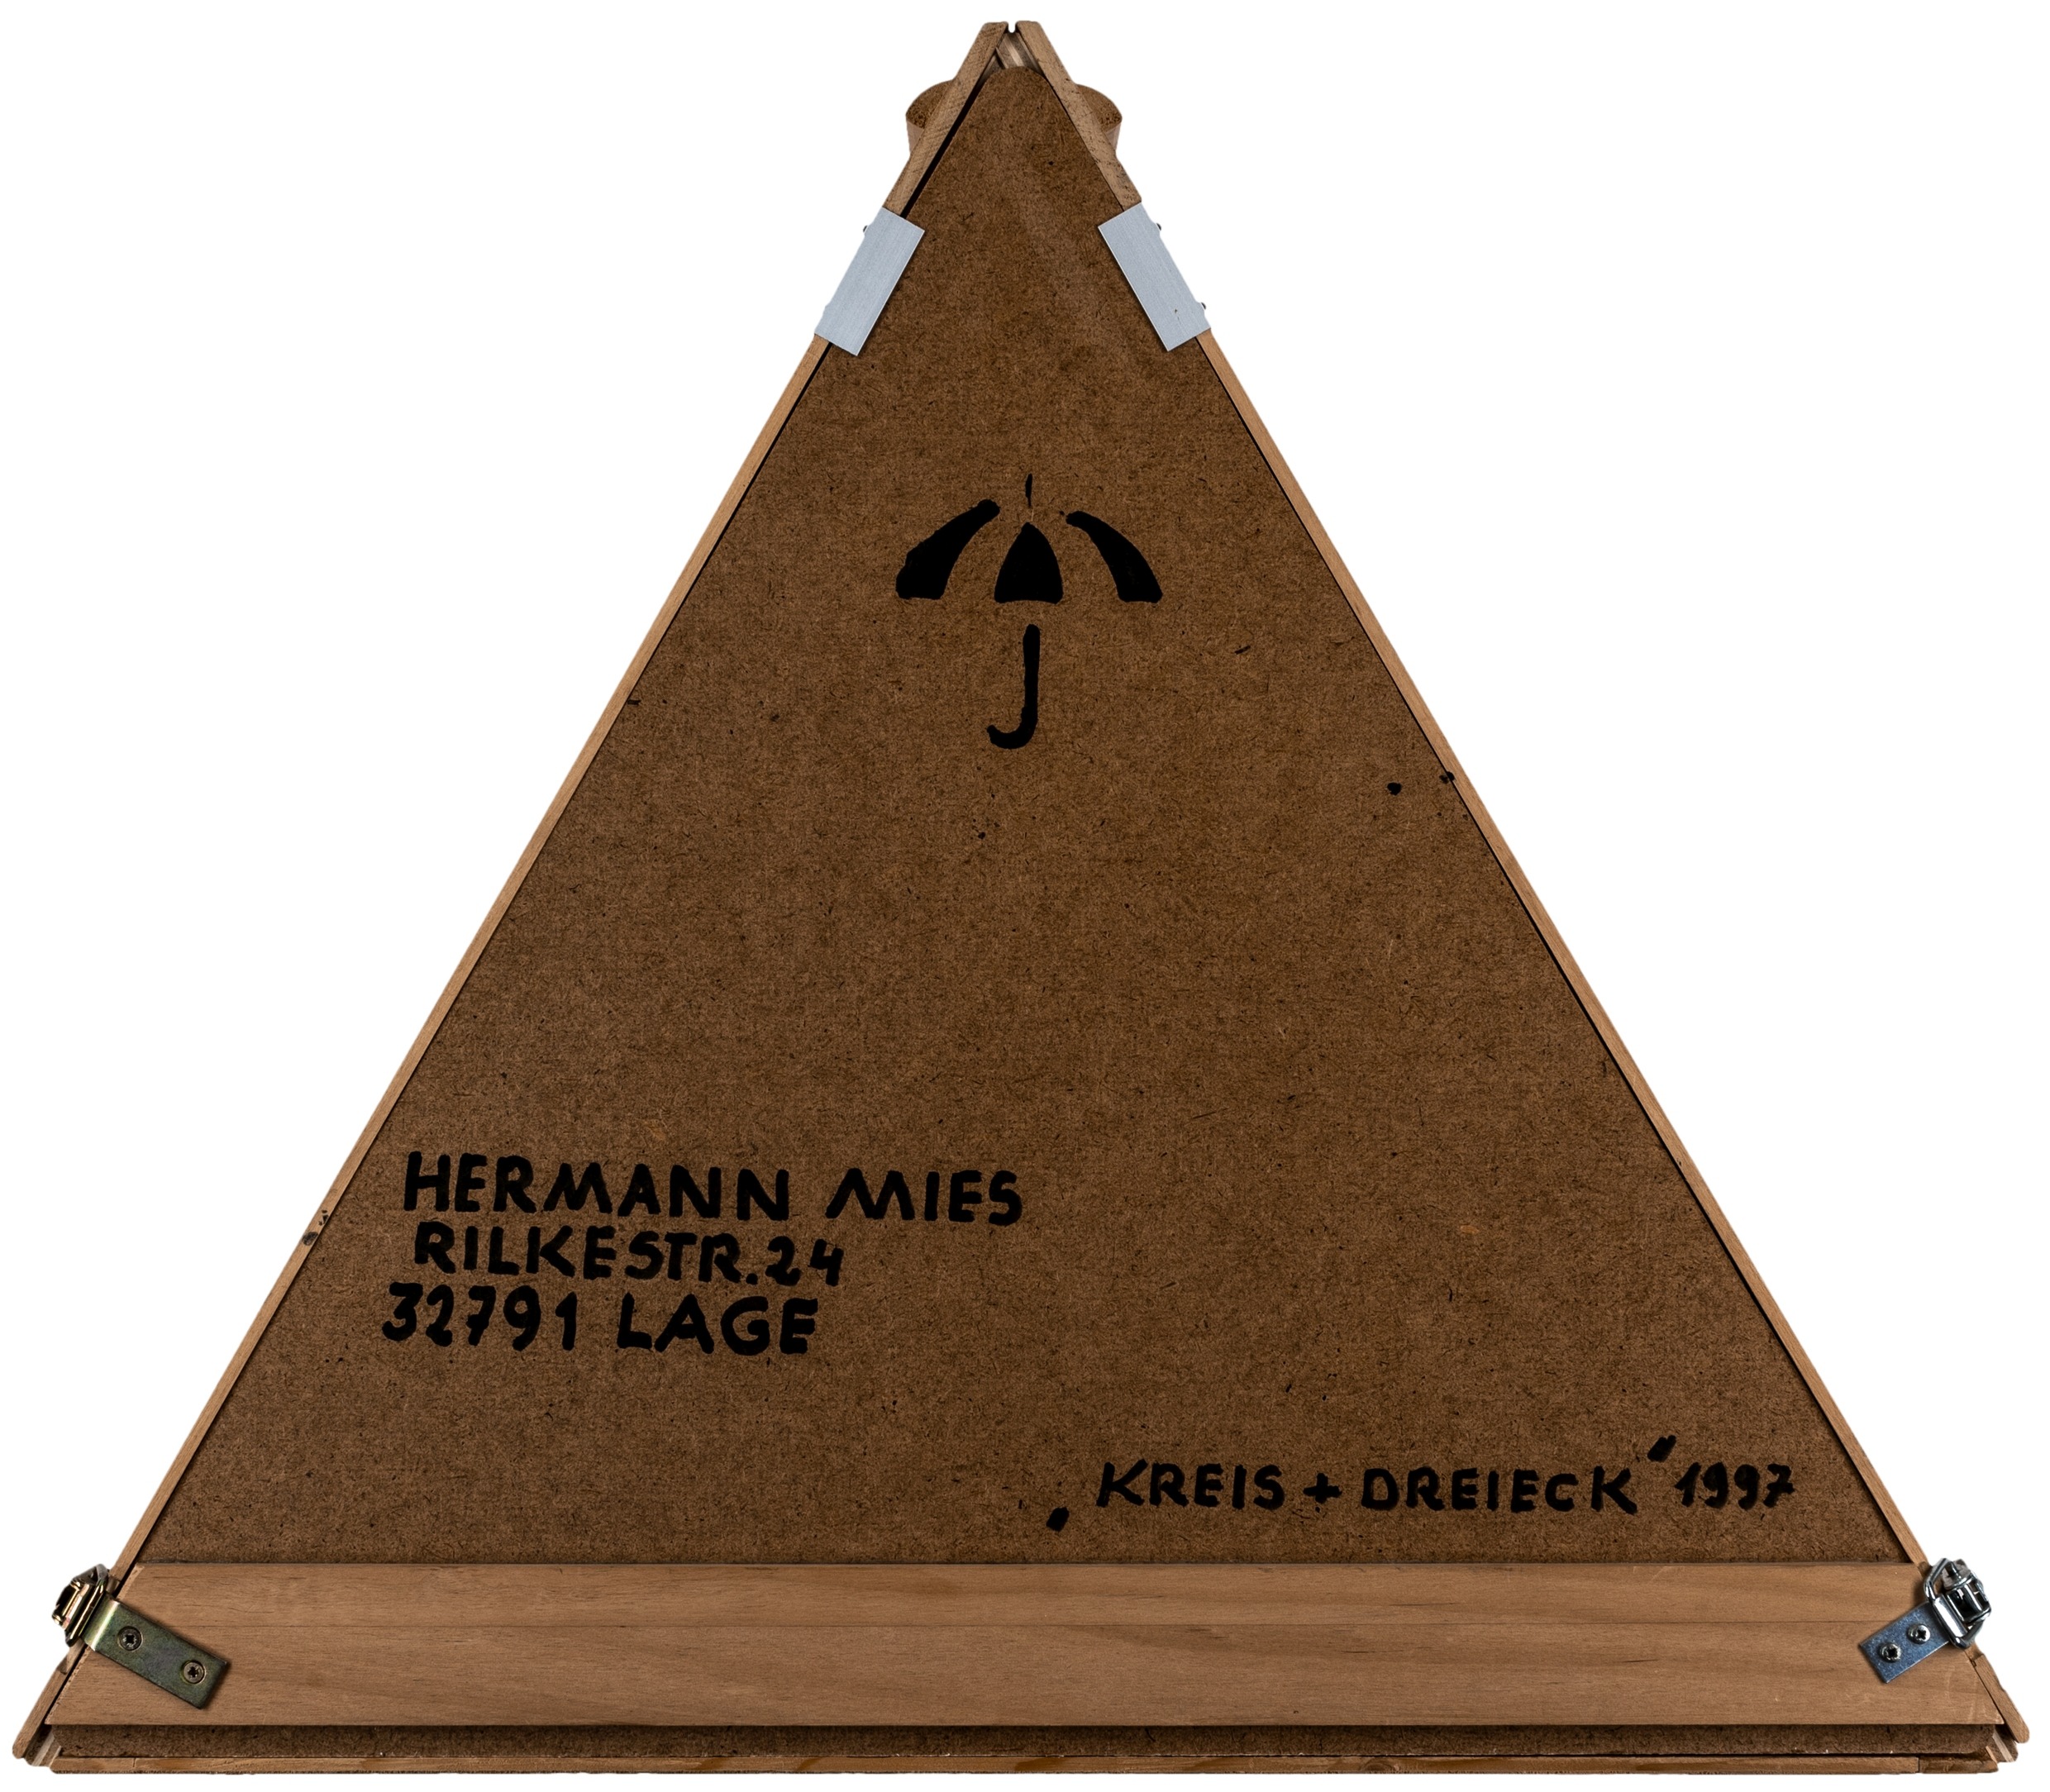 Mies, Hermann. Kreis + Dreieck. - Image 9 of 10